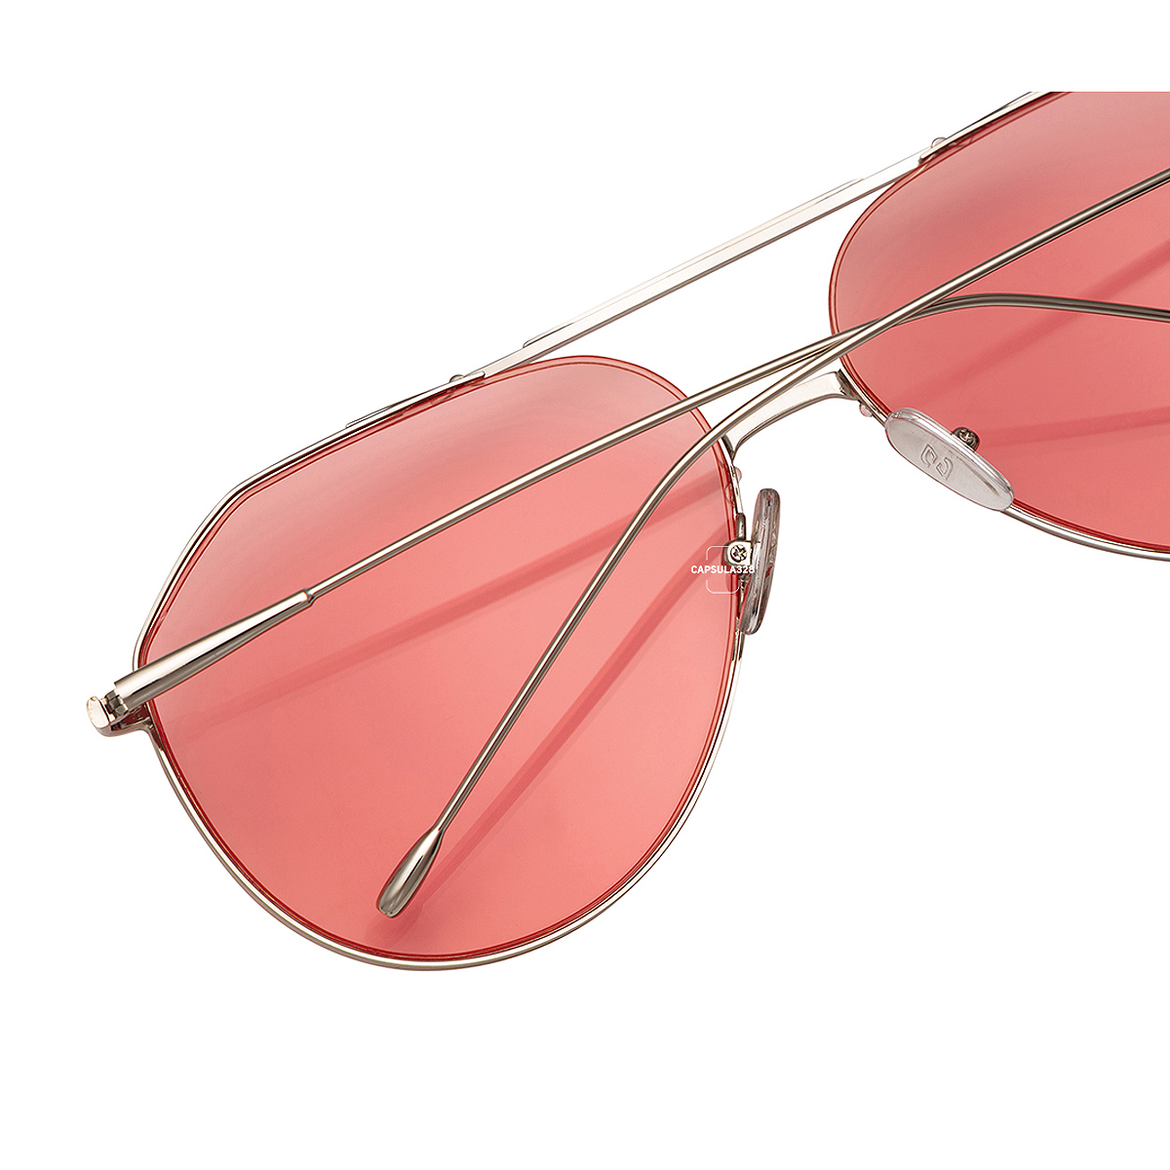 Сонцезахисні окуляри Aviator 7204